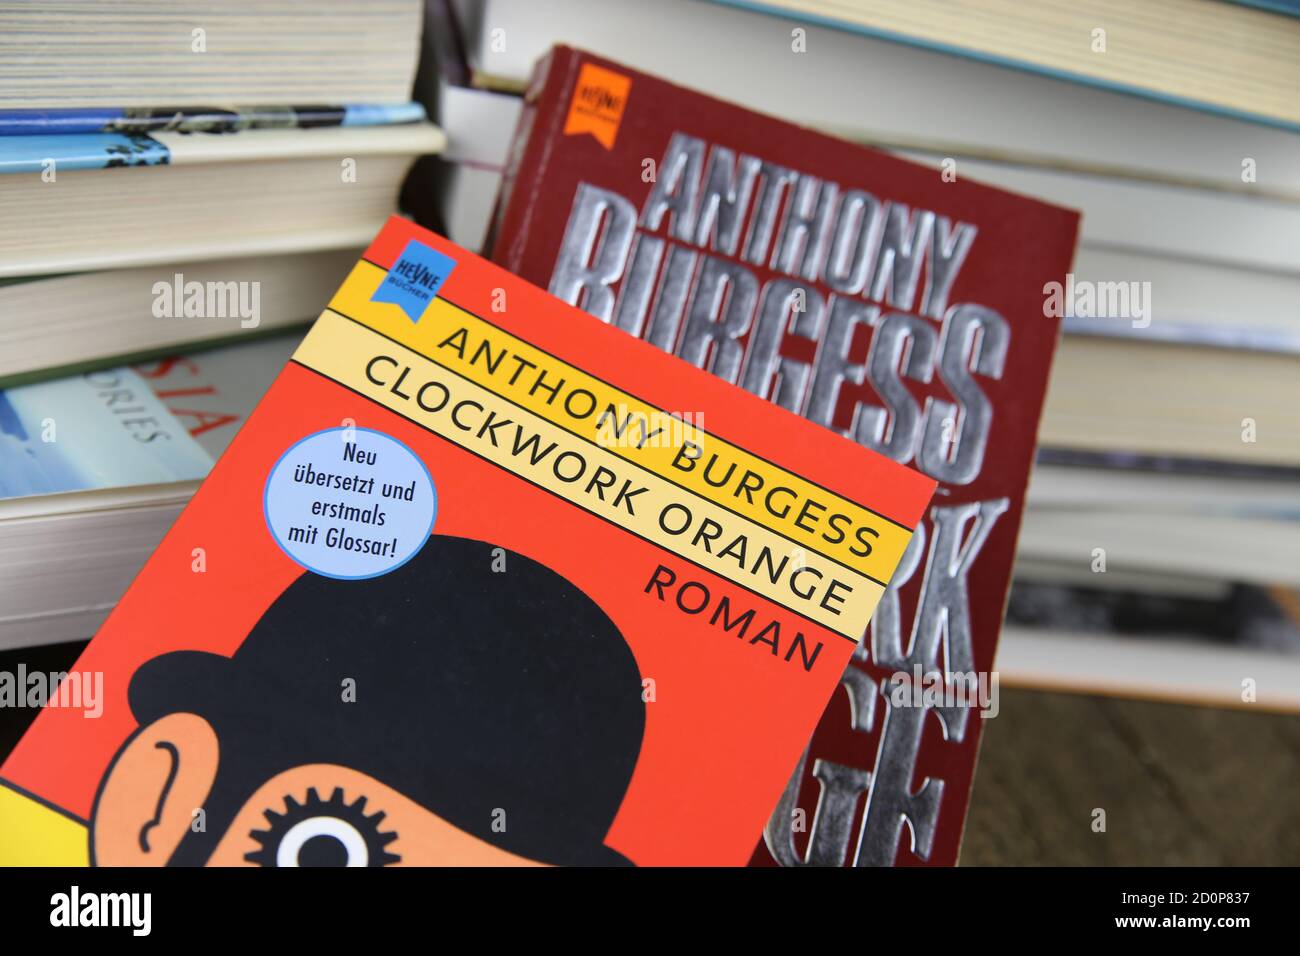 Viersen, Alemania - 9 de mayo. 2020: Vista sobre las cubiertas aisladas del libro de Anthony Burgess reloj naranja con pila de libros de fondo Foto de stock